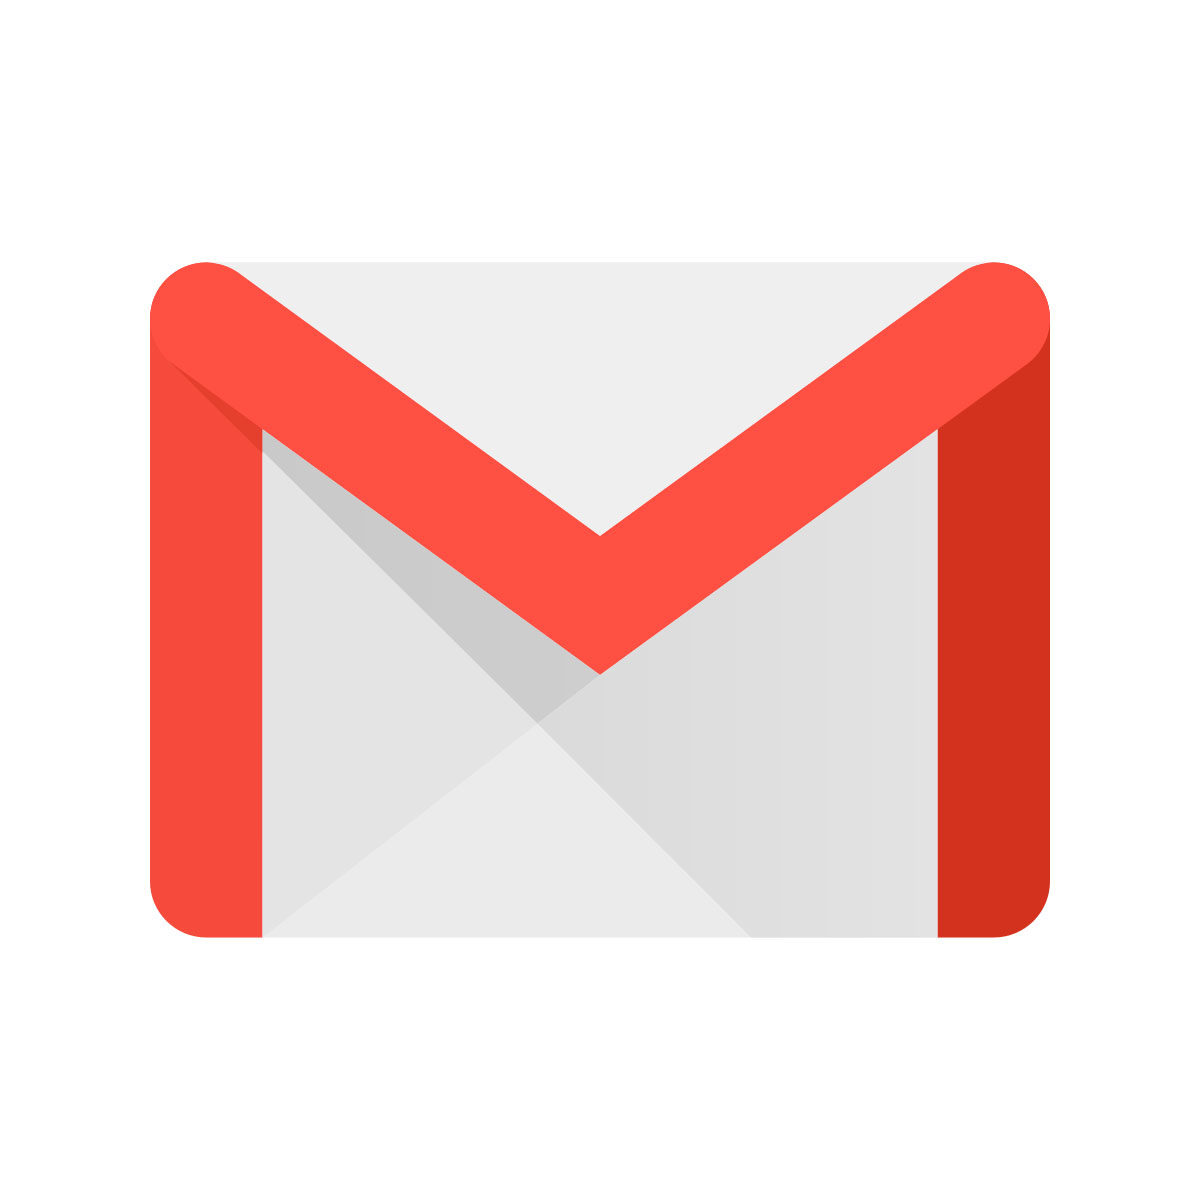 Escribir correos en Gmail ahora es más rápido gracias a este truco